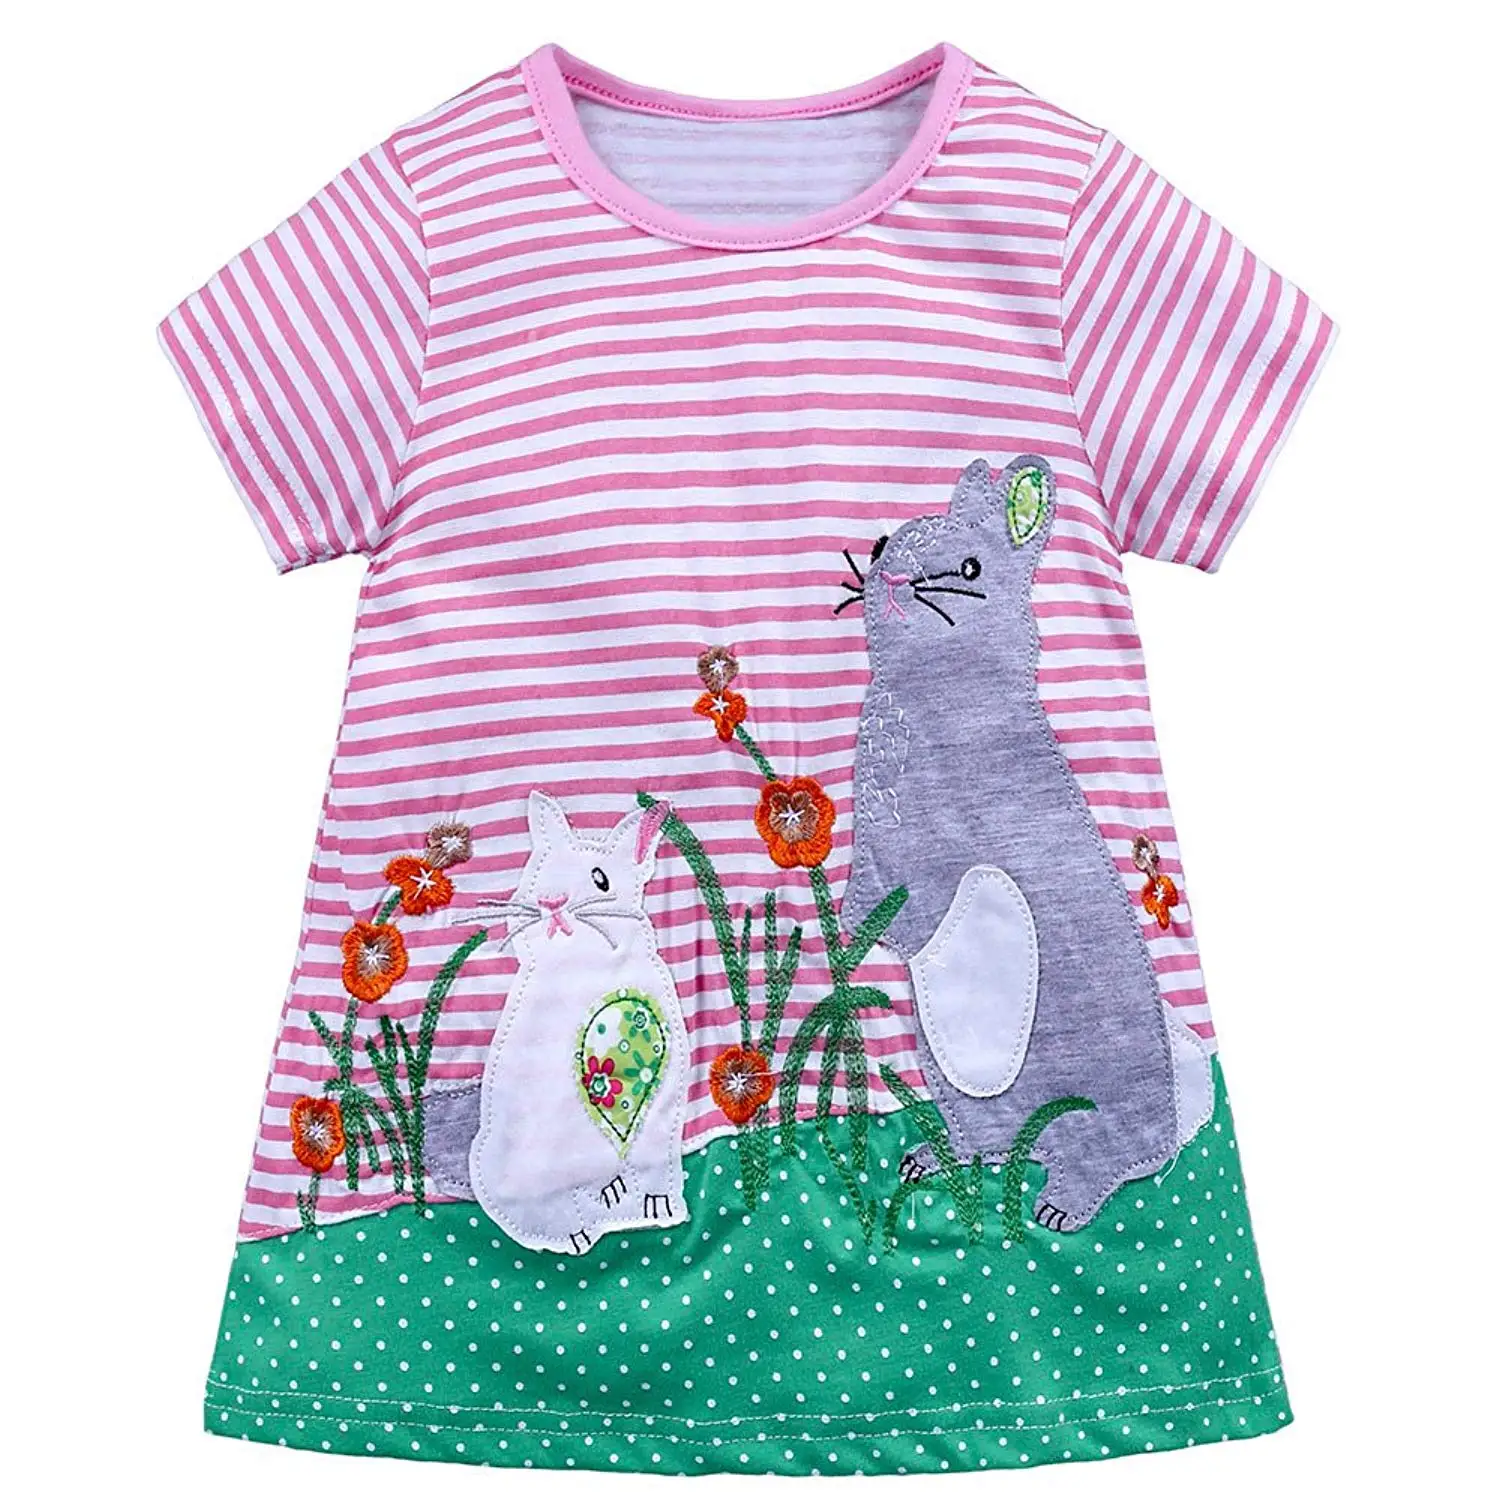 Ruffle T-Shirt Tops+Cartoon Rabbit Skirt Set Outfits 2pcs CSSD Toddler Baby Kids Girls Clothes